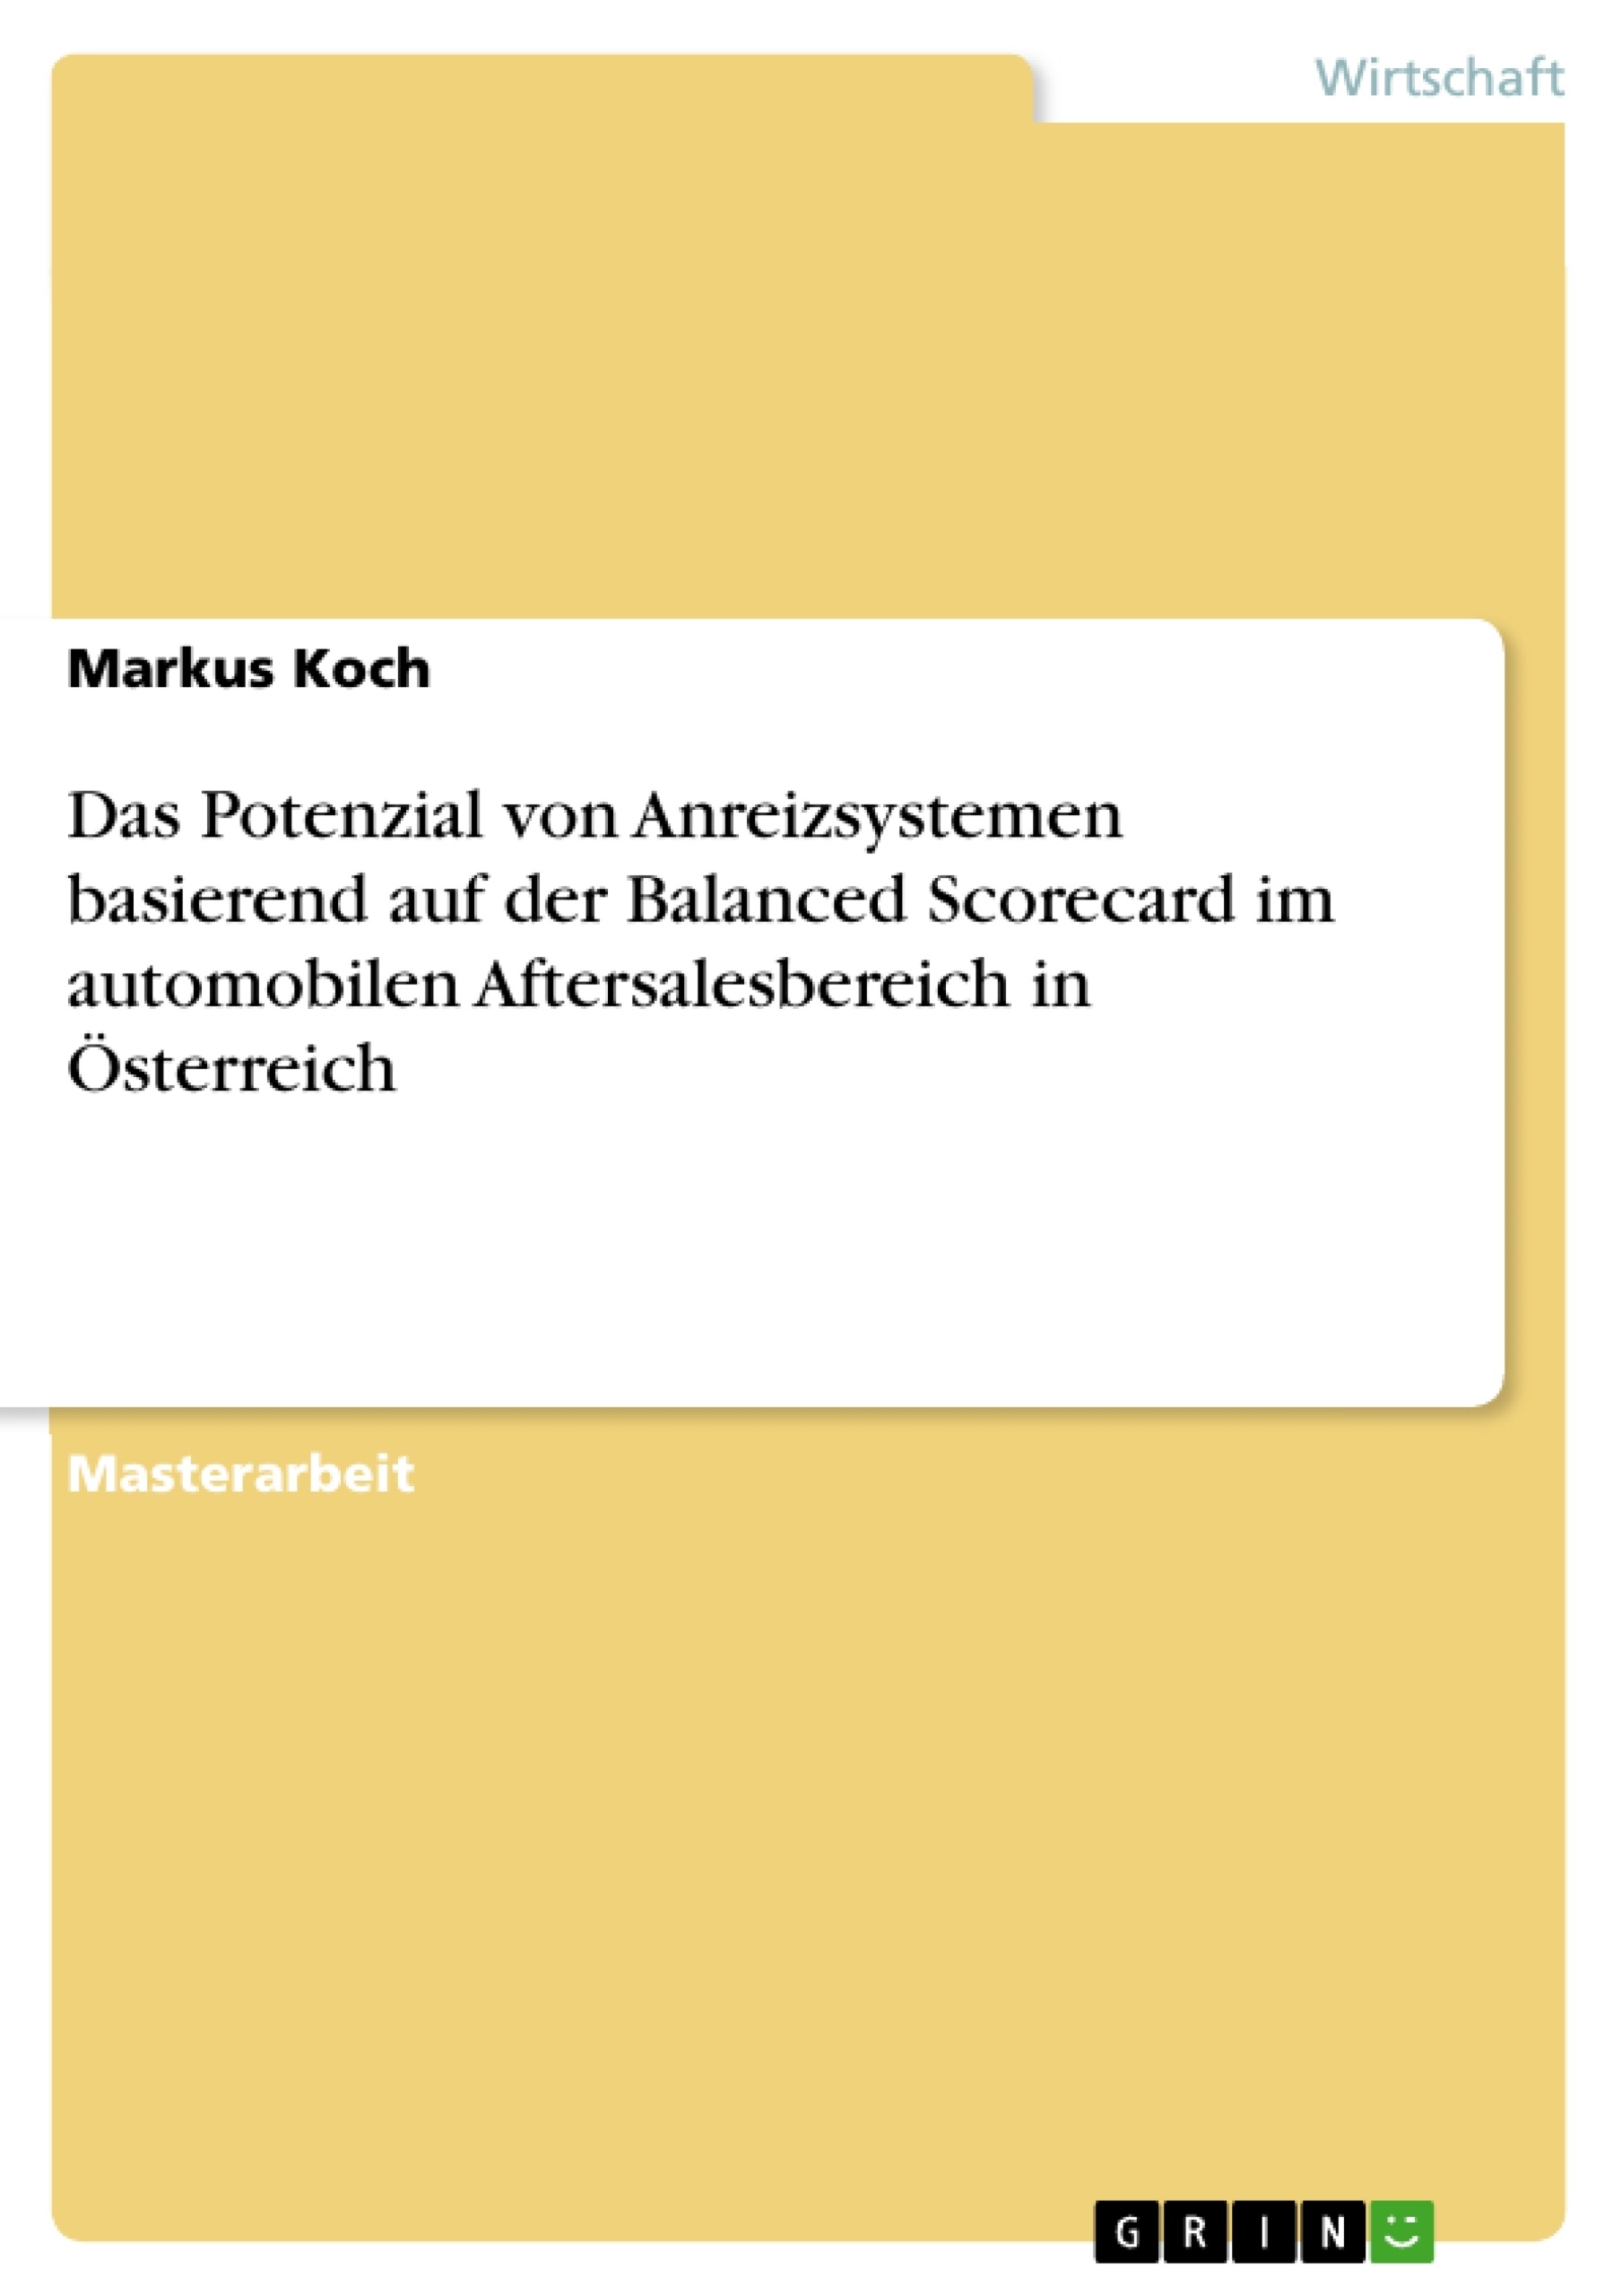 Titre: Das Potenzial von Anreizsystemen basierend auf der Balanced Scorecard im automobilen Aftersalesbereich in Österreich